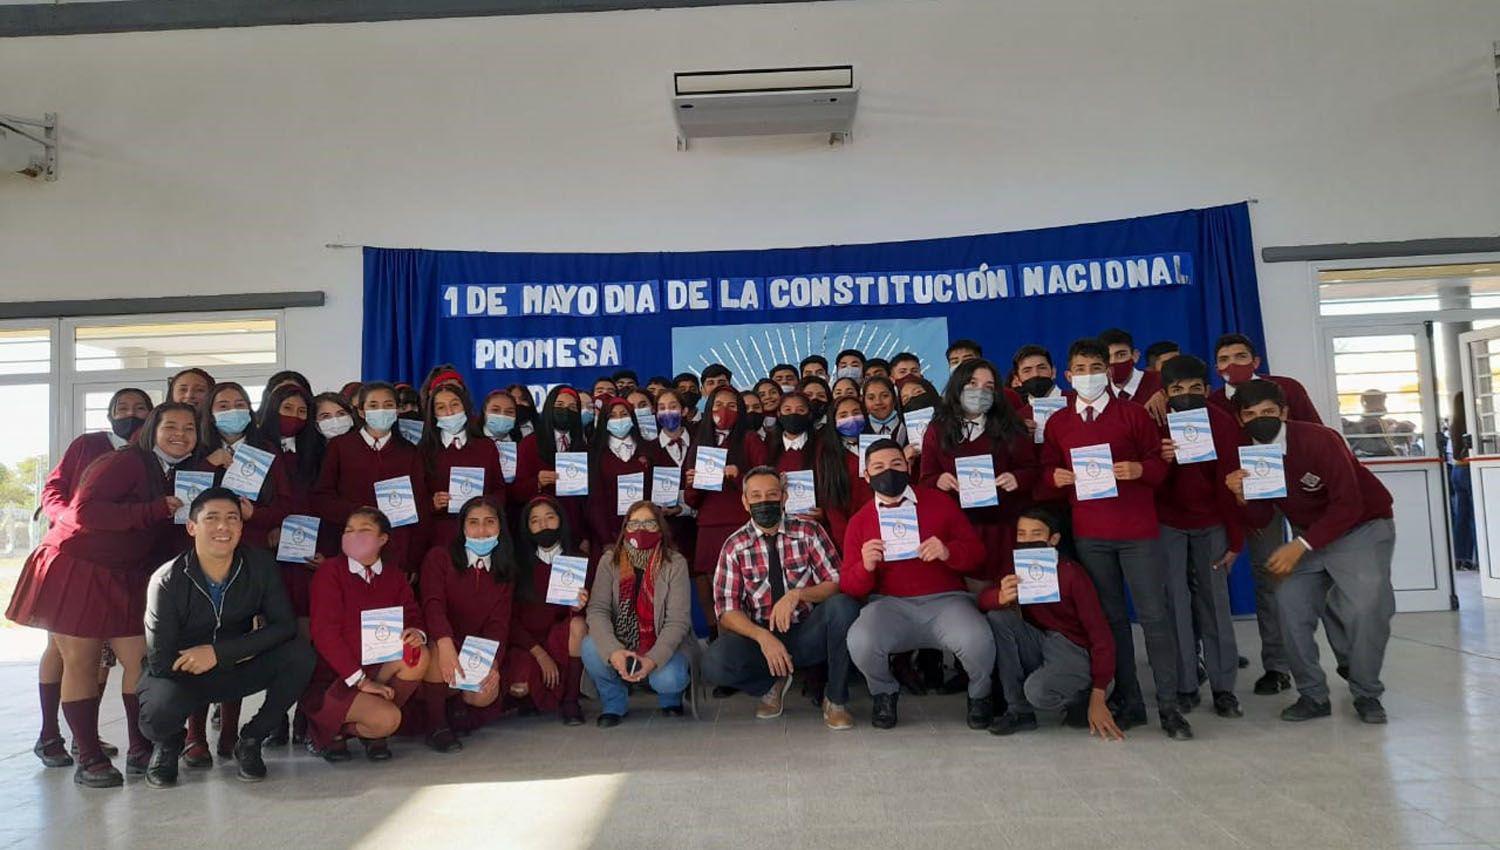 Alumnos secundarios de Herrera juraron lealtad a la Constitucioacuten Nacional